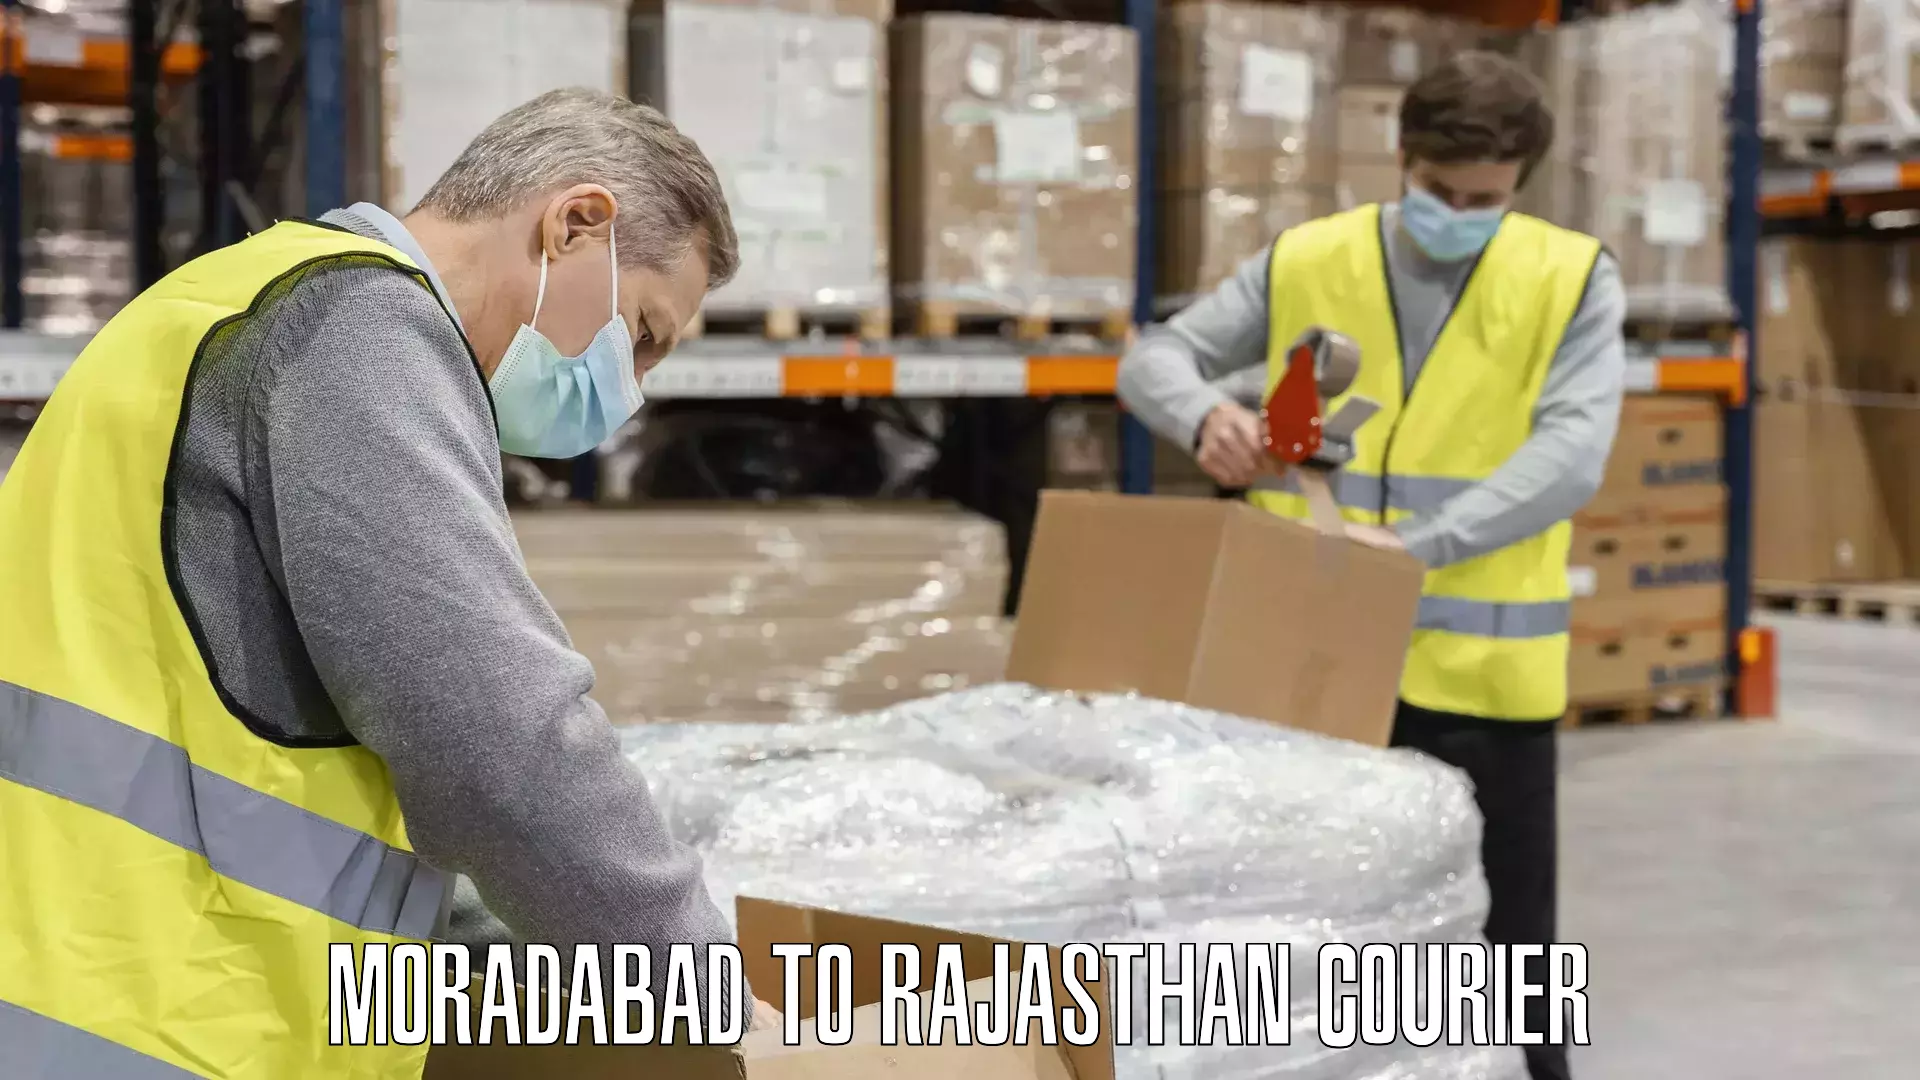 Baggage shipping quotes Moradabad to Rajasthan